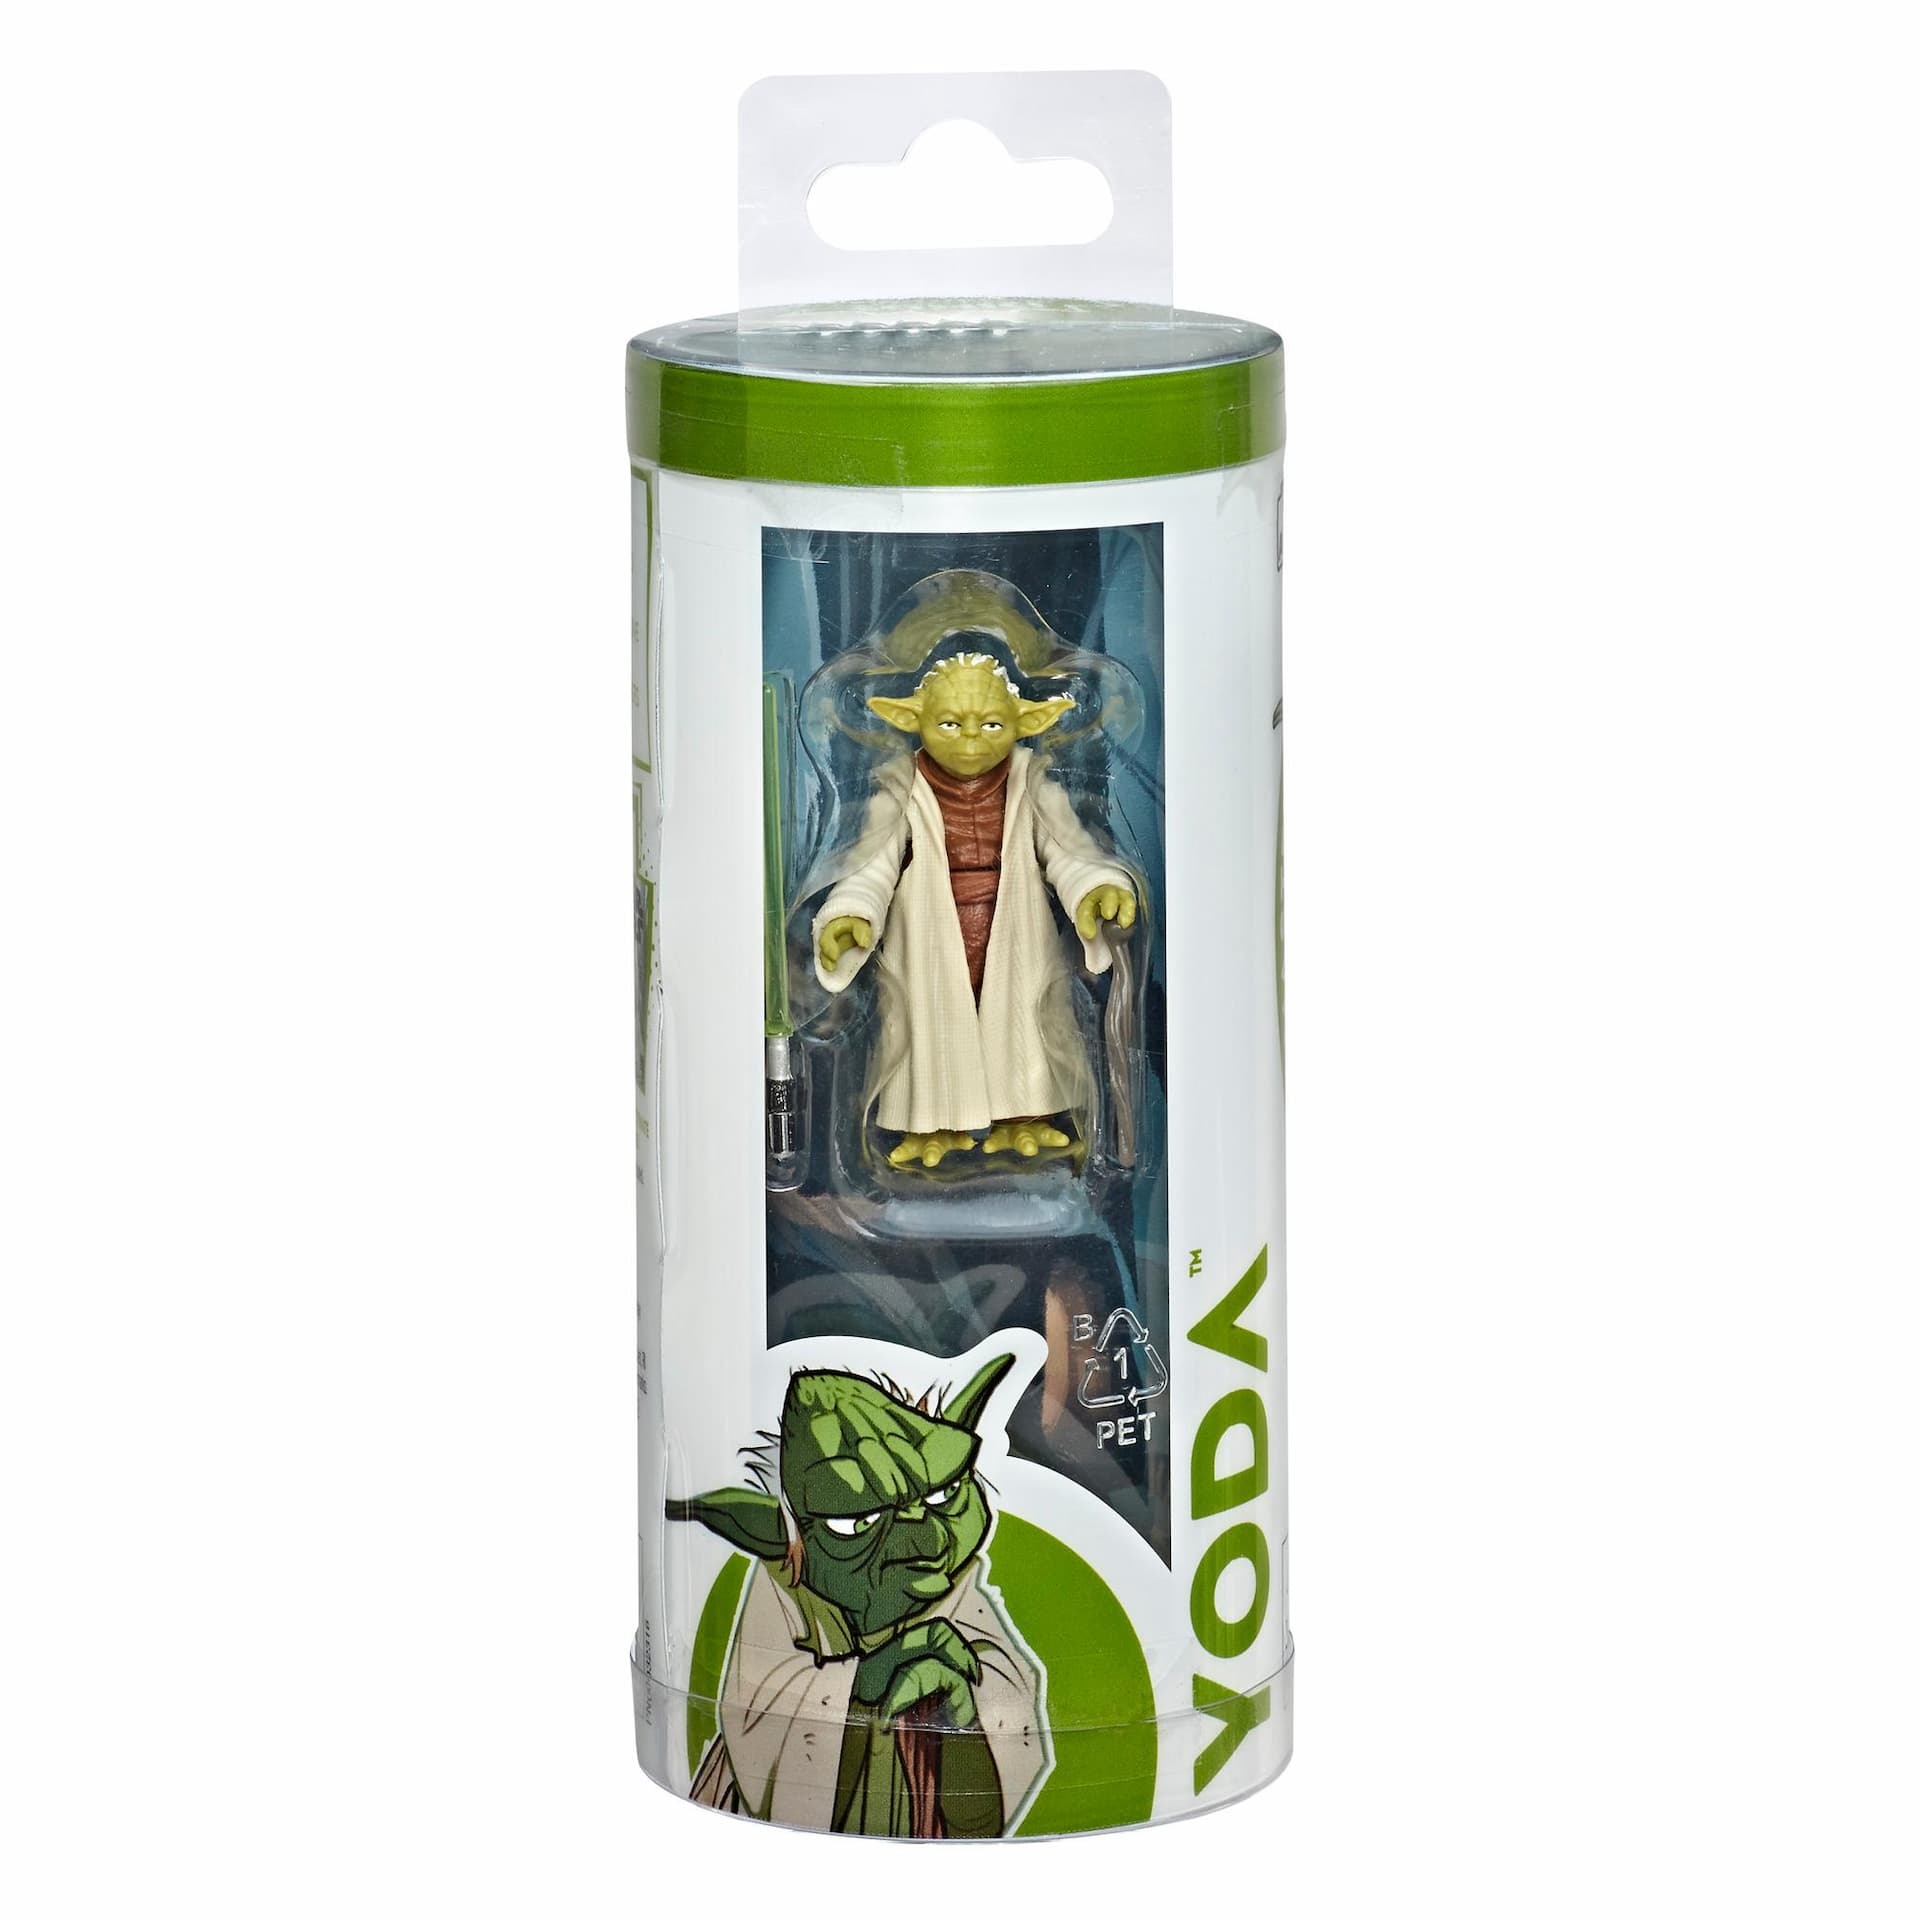 Star Wars Galaxy of Adventures - Figura de Yoda y minihistorieta